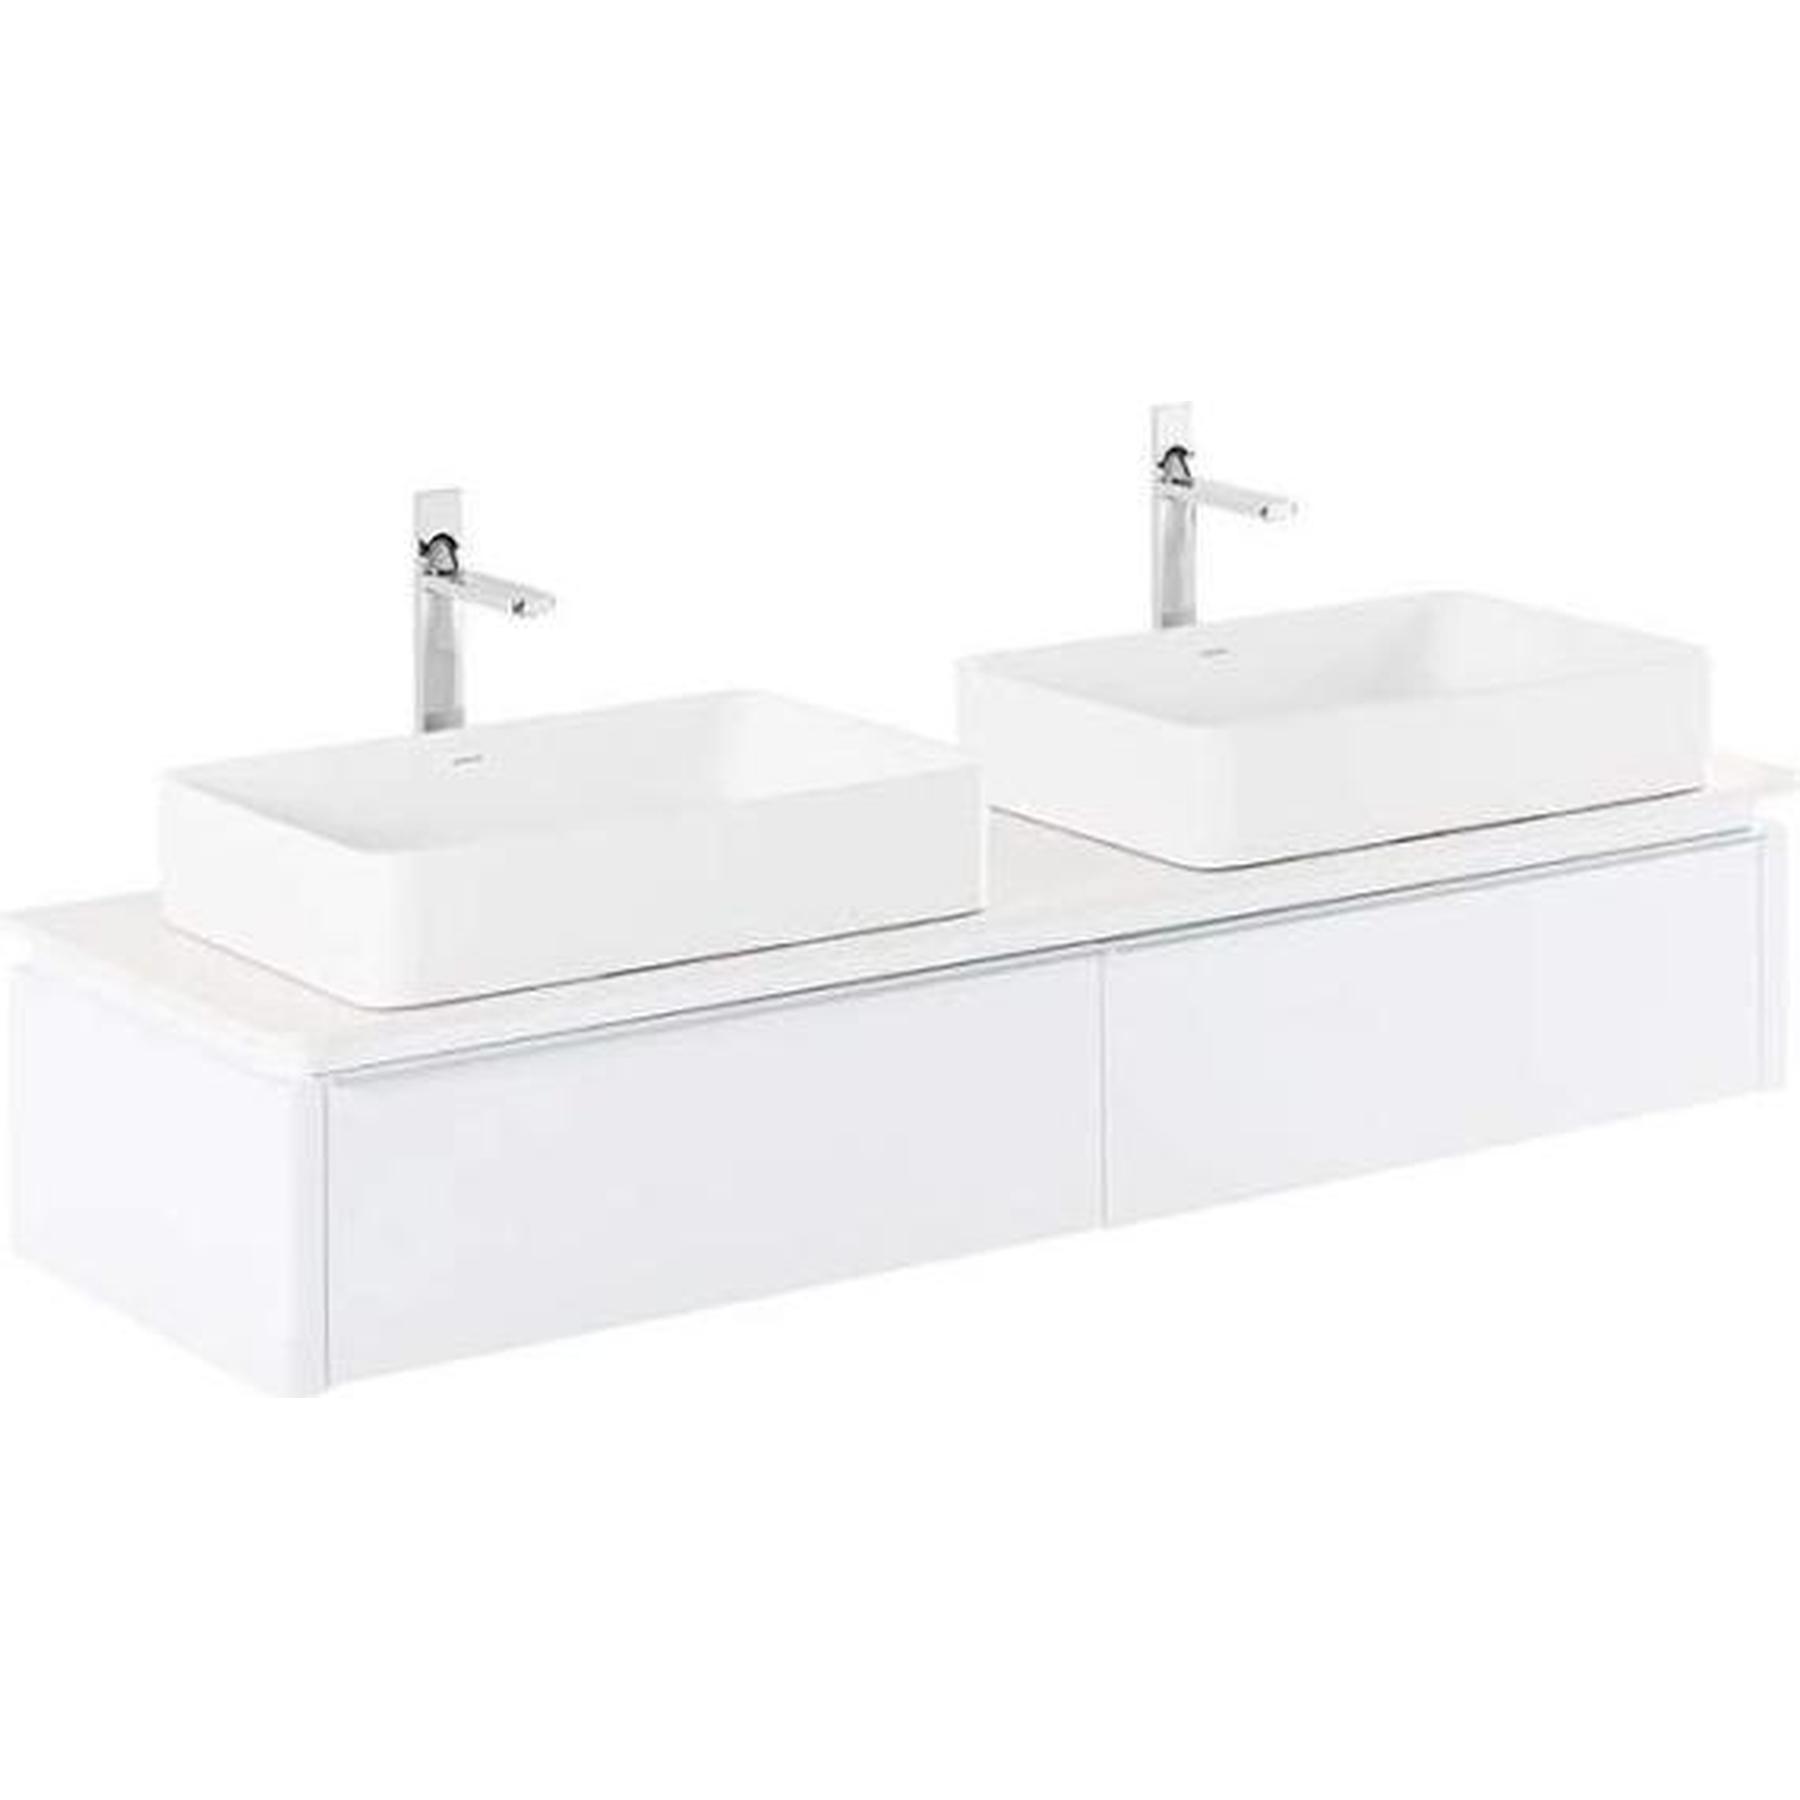 Meuble salle de bains suspendu 160 Gamme PRO SANINDUSA plan perce pour Vasque et robinet sur plan Sanlife couleur blanc/taupe